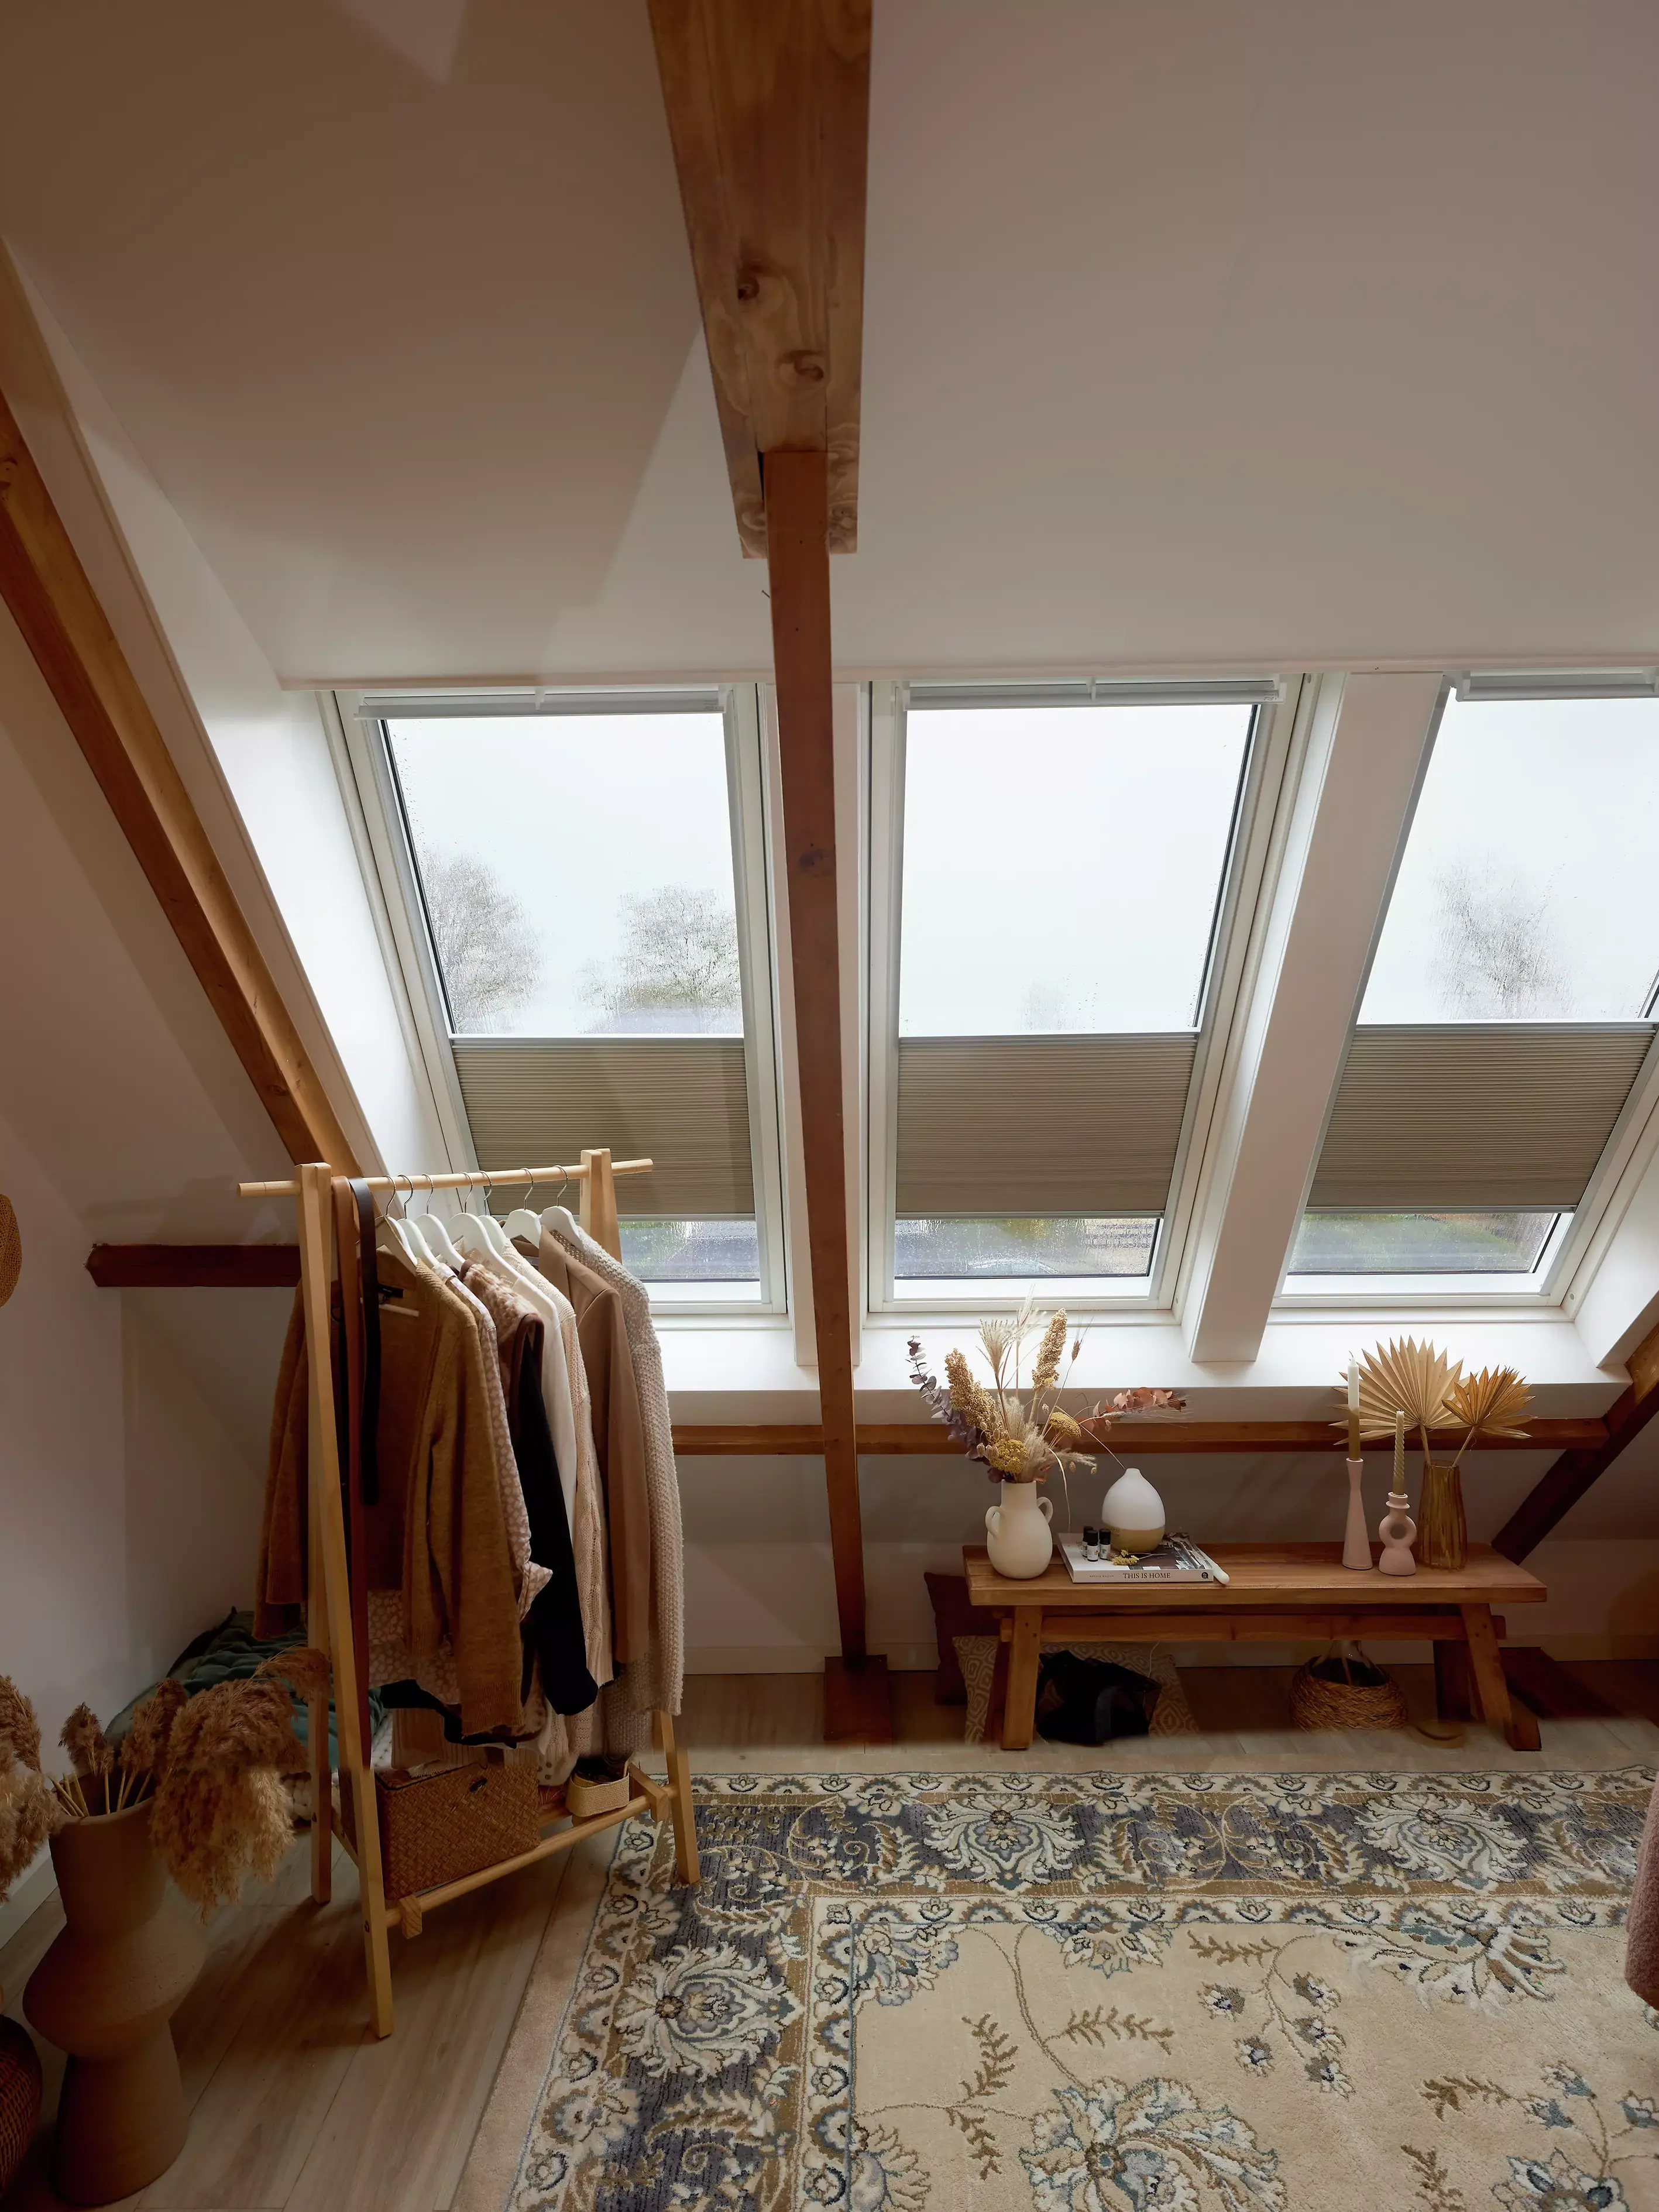 Espace dressing dans le comble avec lumière naturelle provenant des fenêtres de toit VELUX, détails en bois, et tapis vintage.